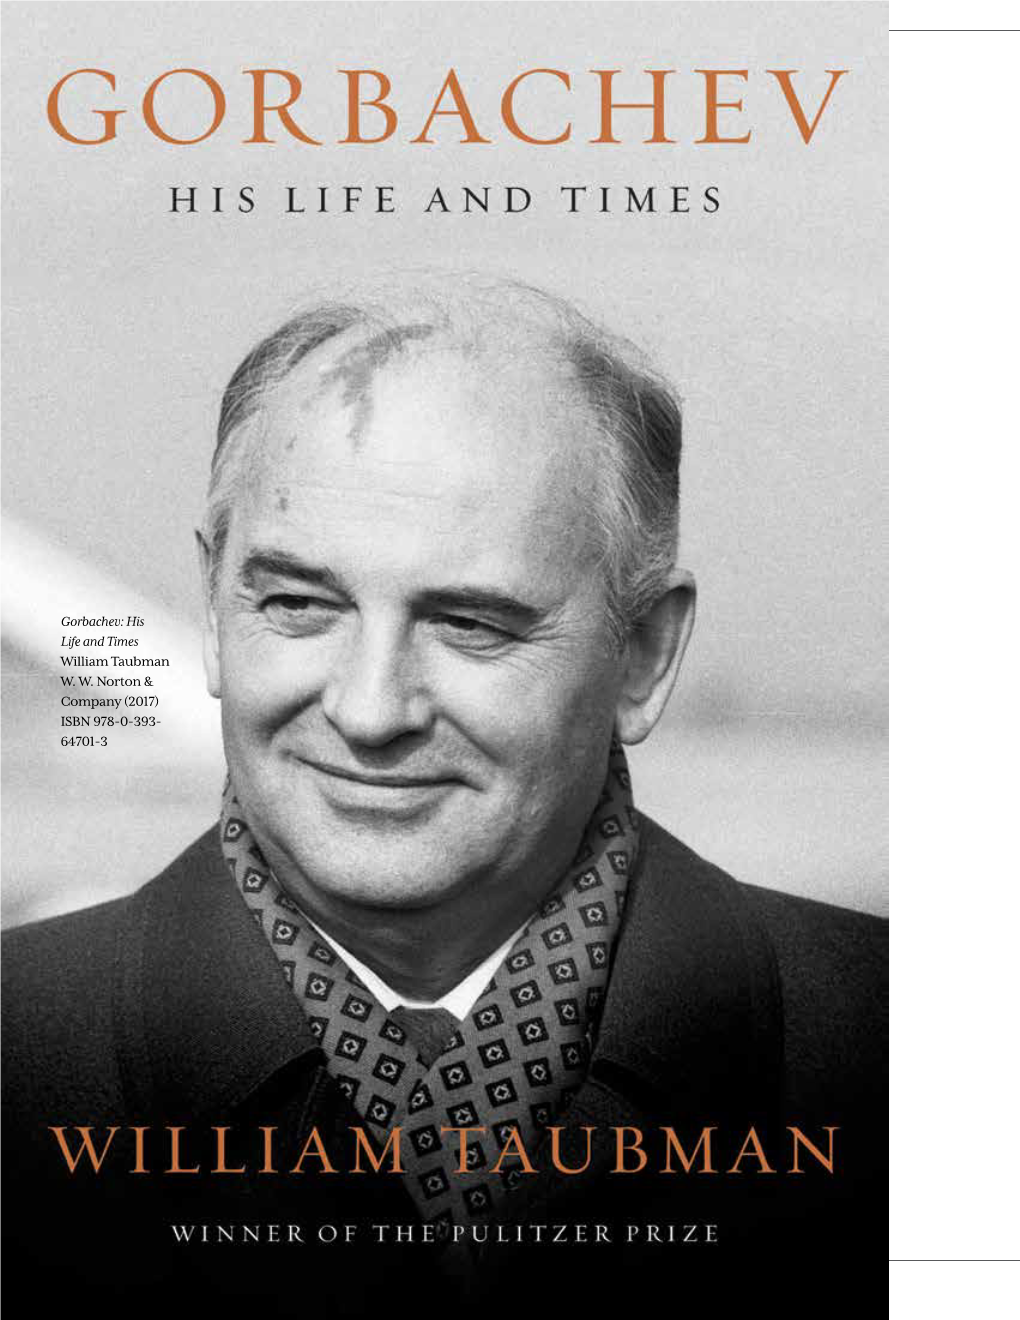 Gorbachev: His Life and Times William Taubman W. W. Norton